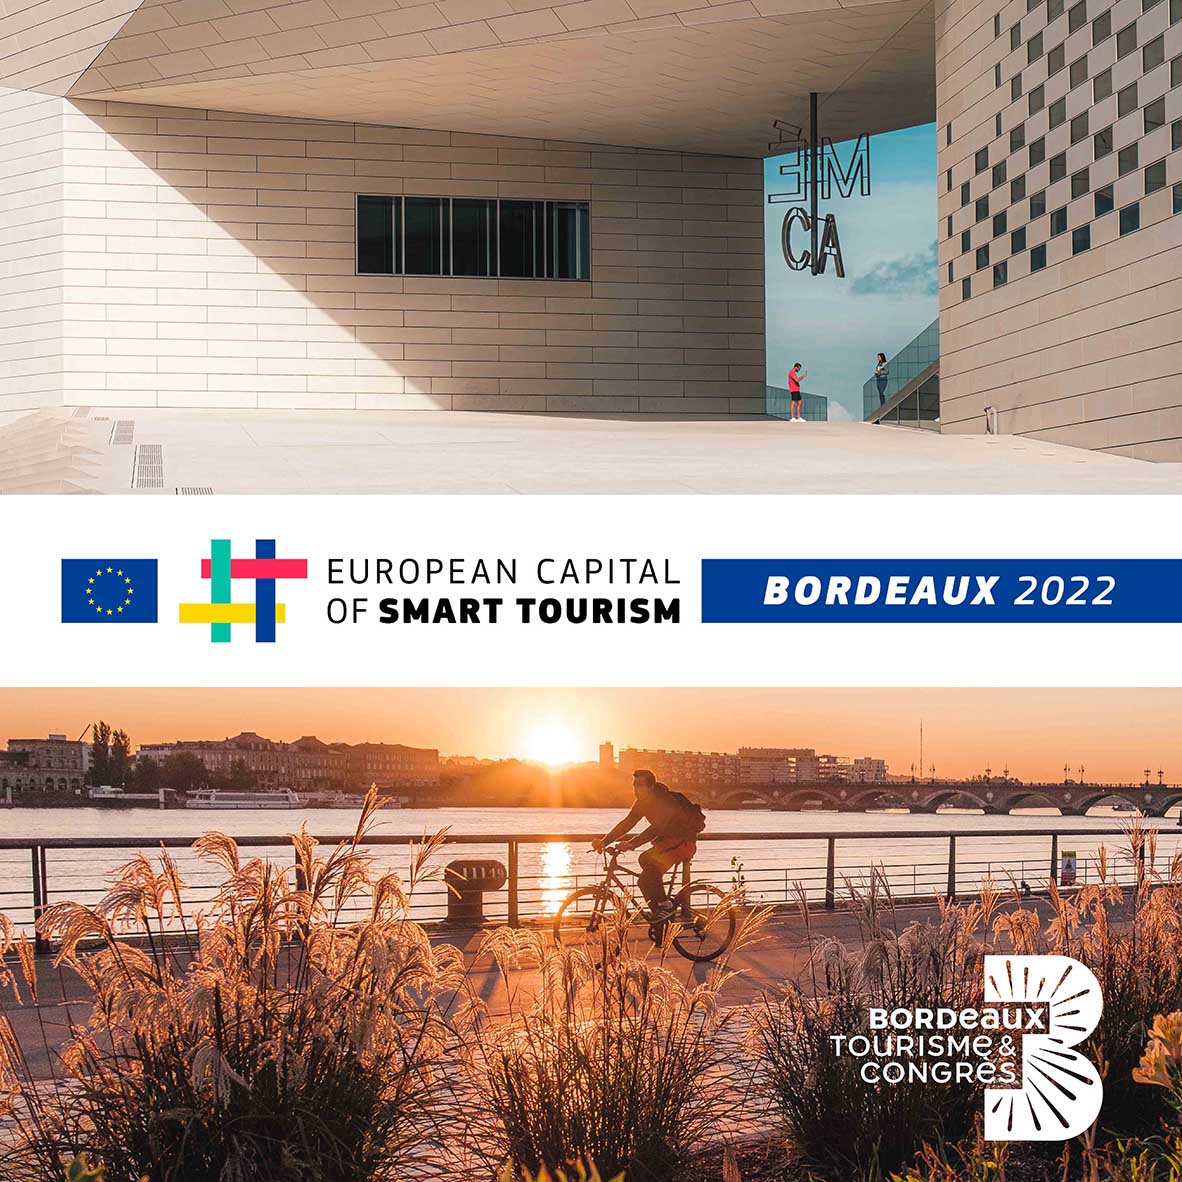 BORDEAUX EUROPEAN CAPITAL OF SMART TOURISM 2022